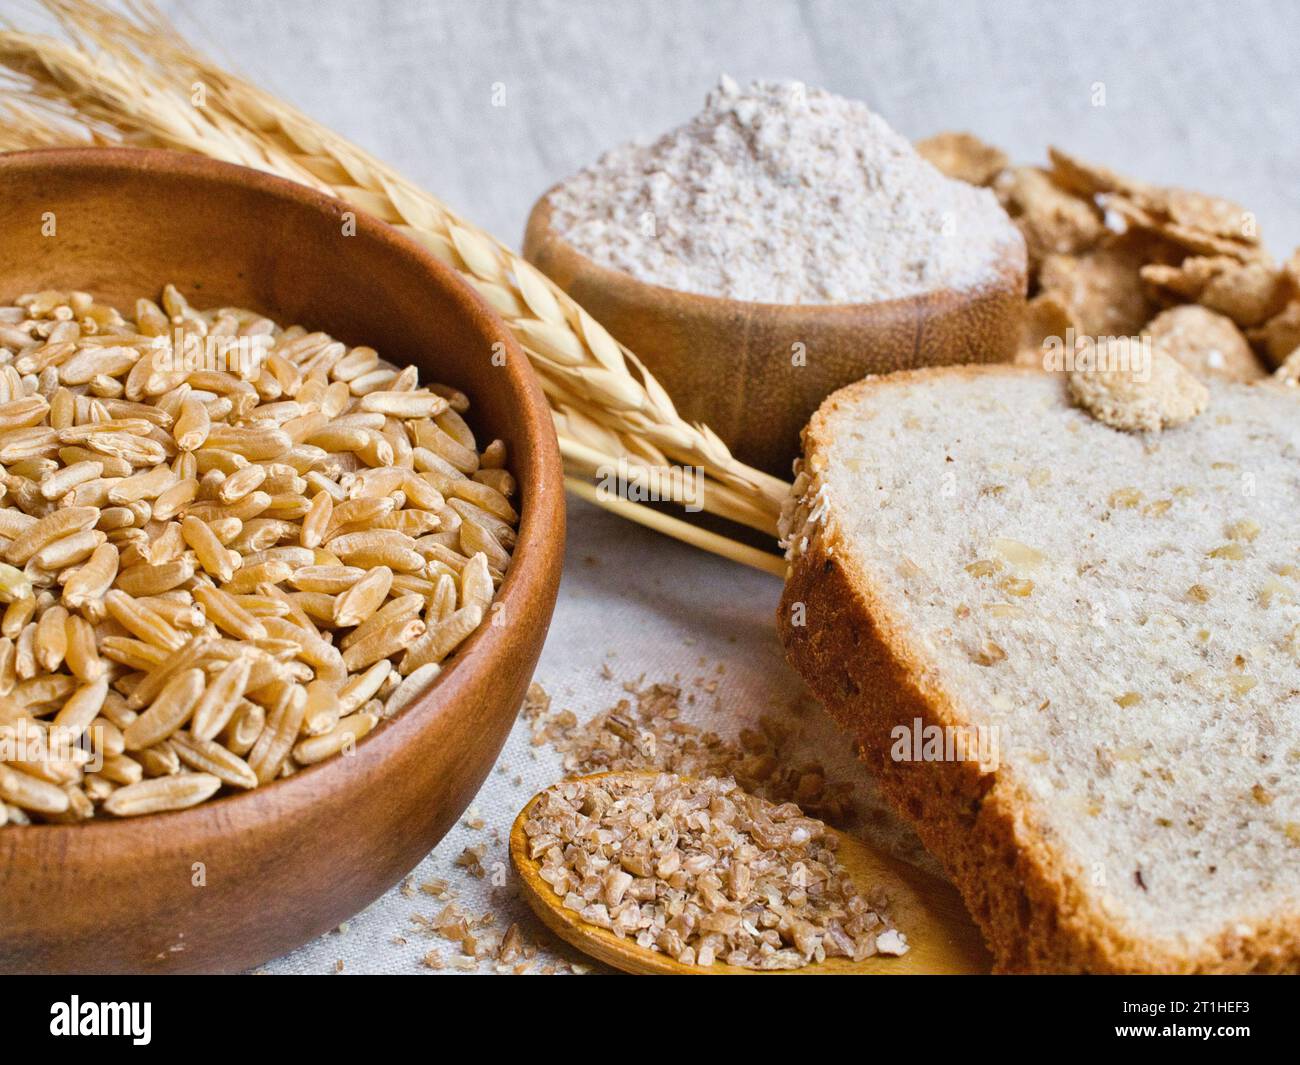 Nature morte de blé, de blé entier, de blé boulgour, de farine de blé entier et de pain de blé entier, avec épis de blé sur toile de table en lin. Banque D'Images